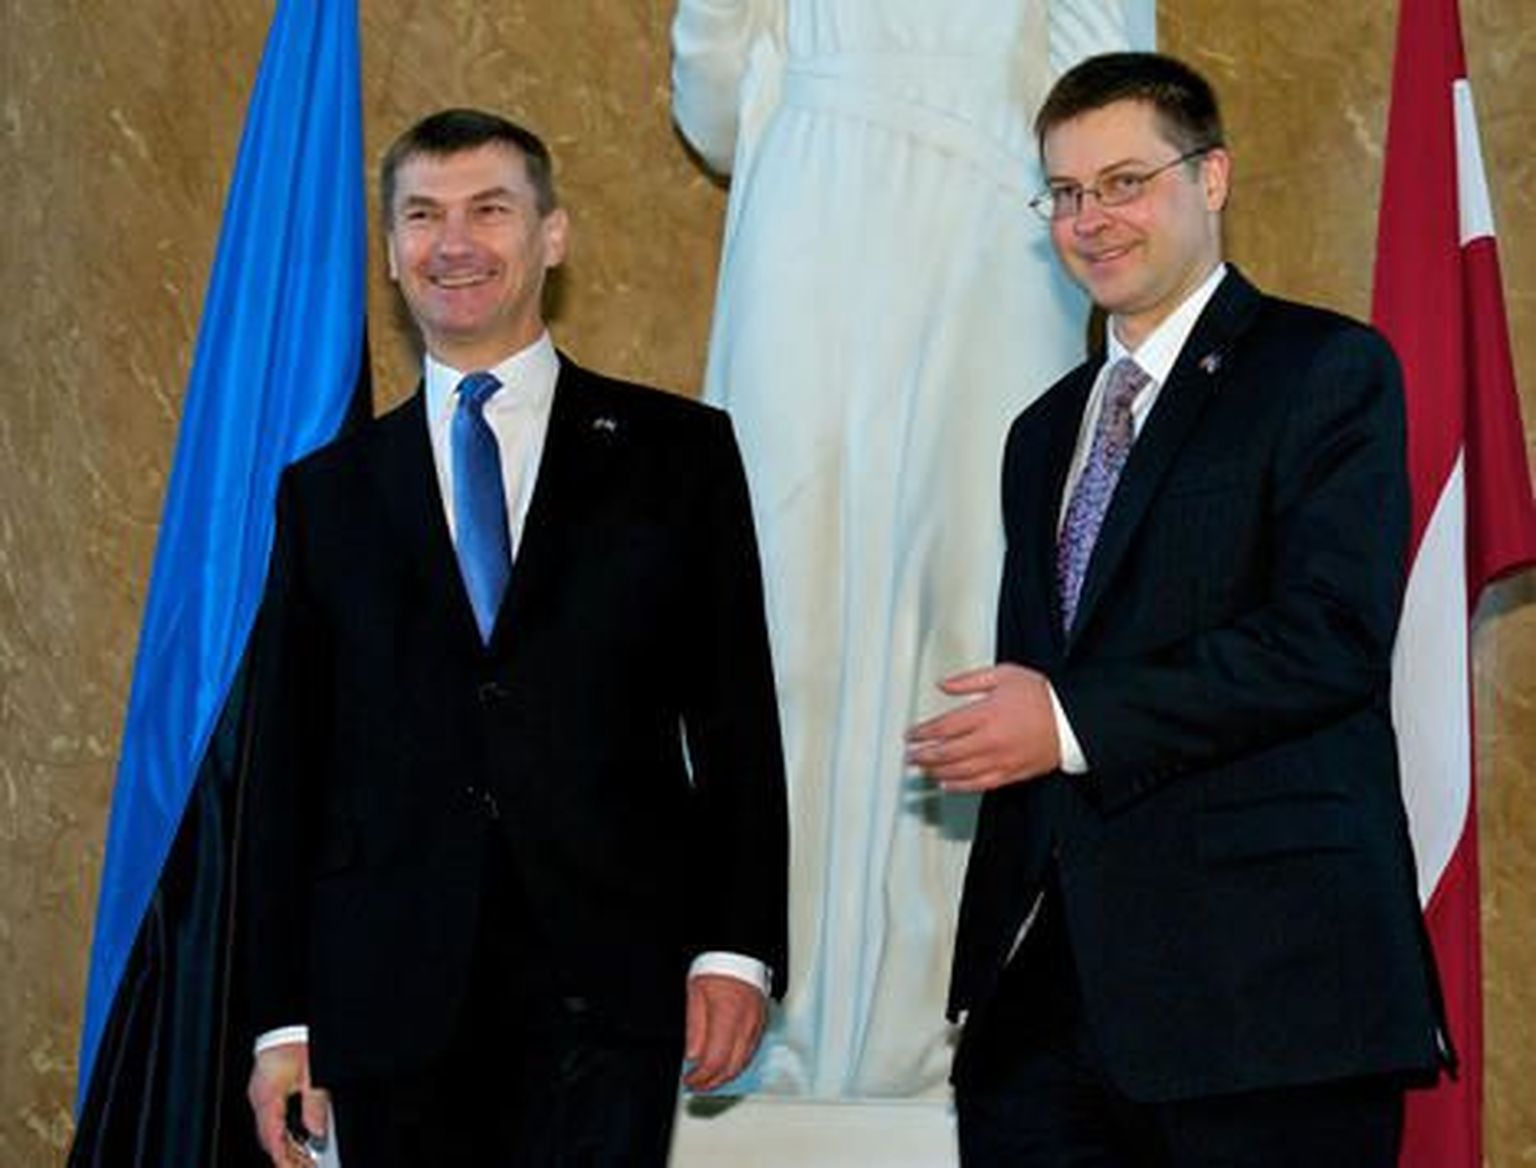 Встреча премьер-министров Латвии Валдиса Домбровскиса (справа) и Эстонии Андруса Ансипа.